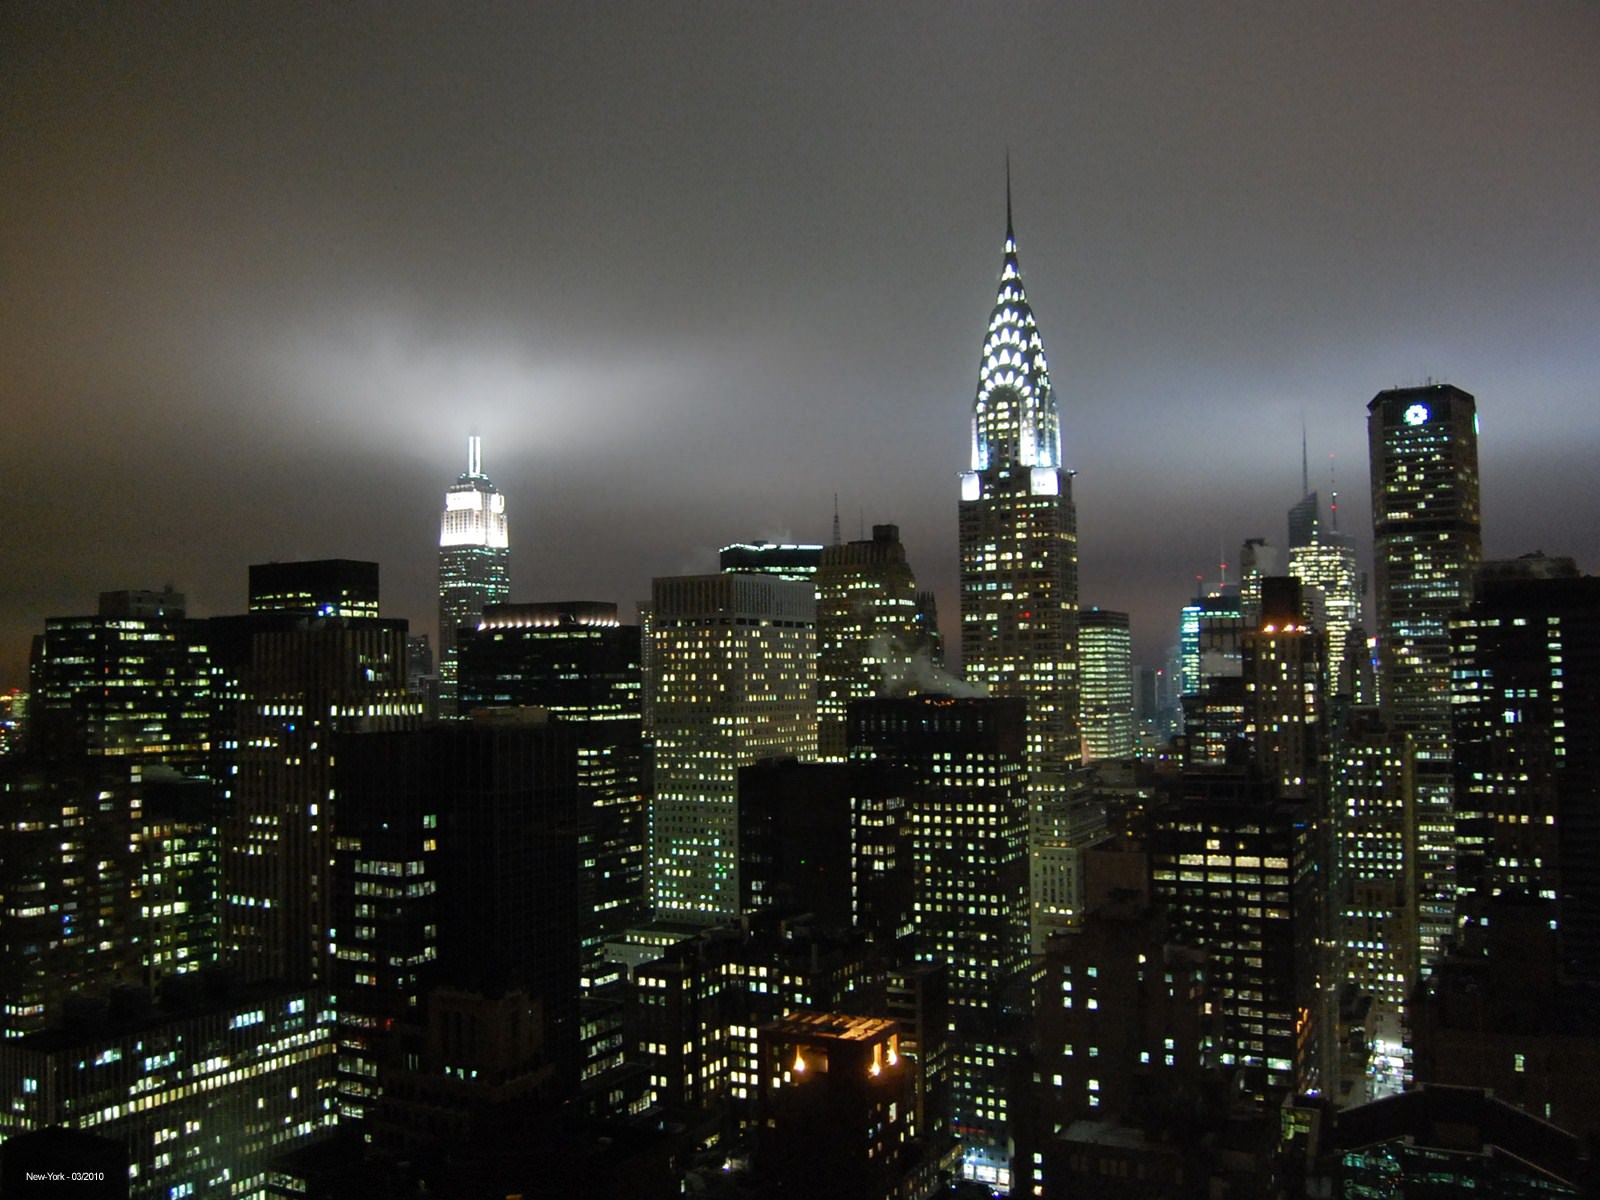 New York New-York by night